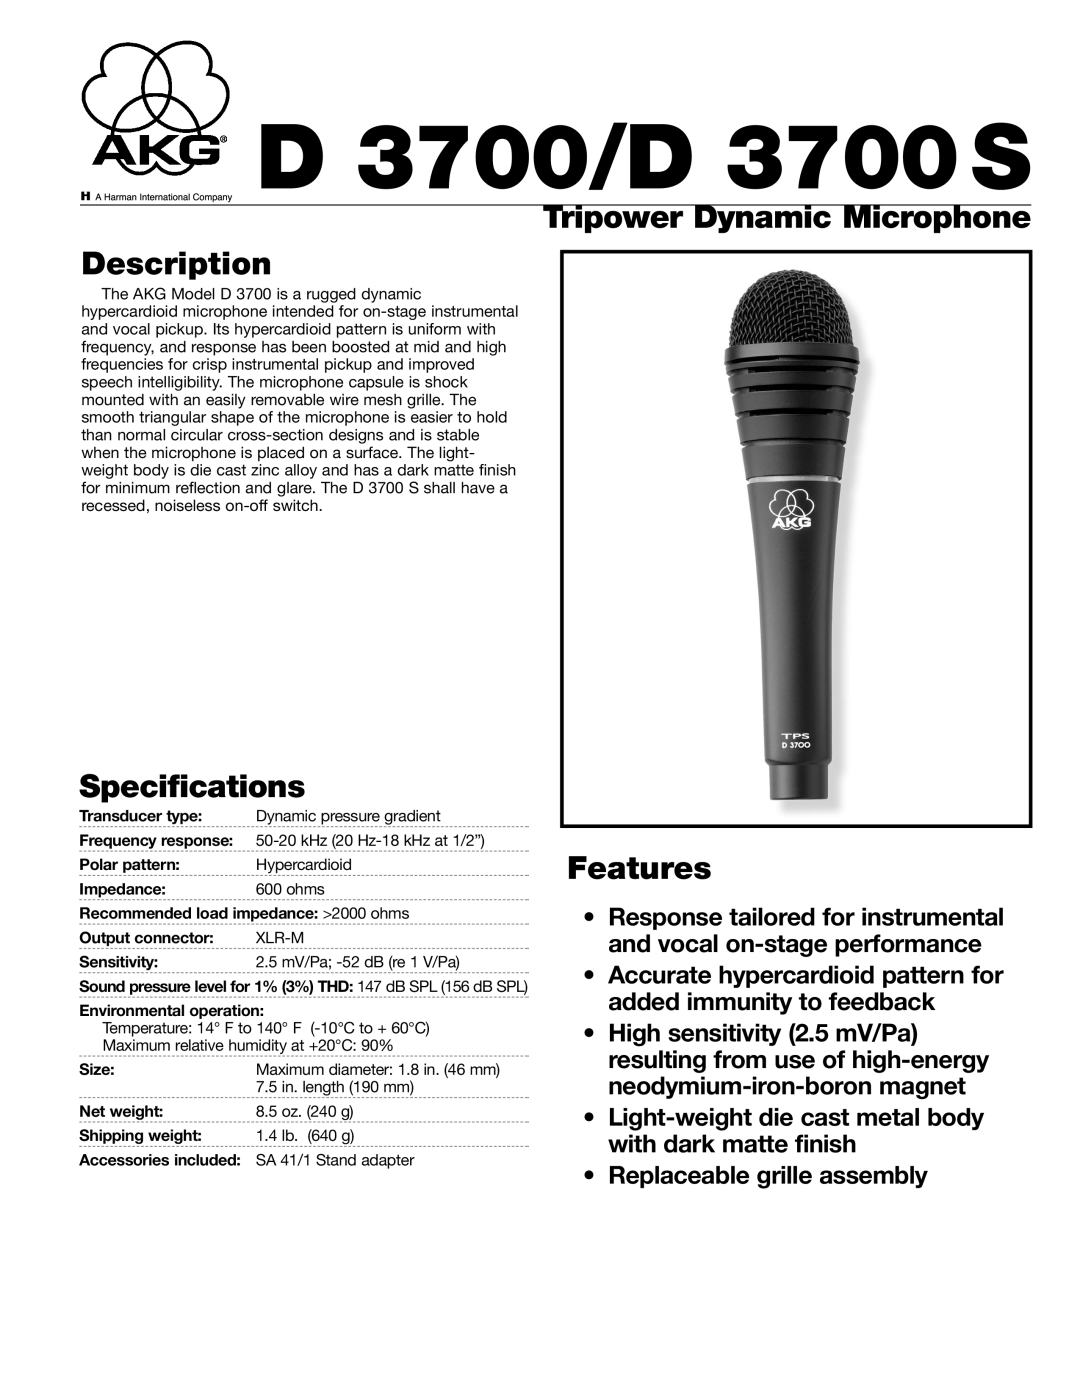 AKG Acoustics specifications Description, Specifications, Tripower Dynamic Microphone Features, D 3700/D 3700S 